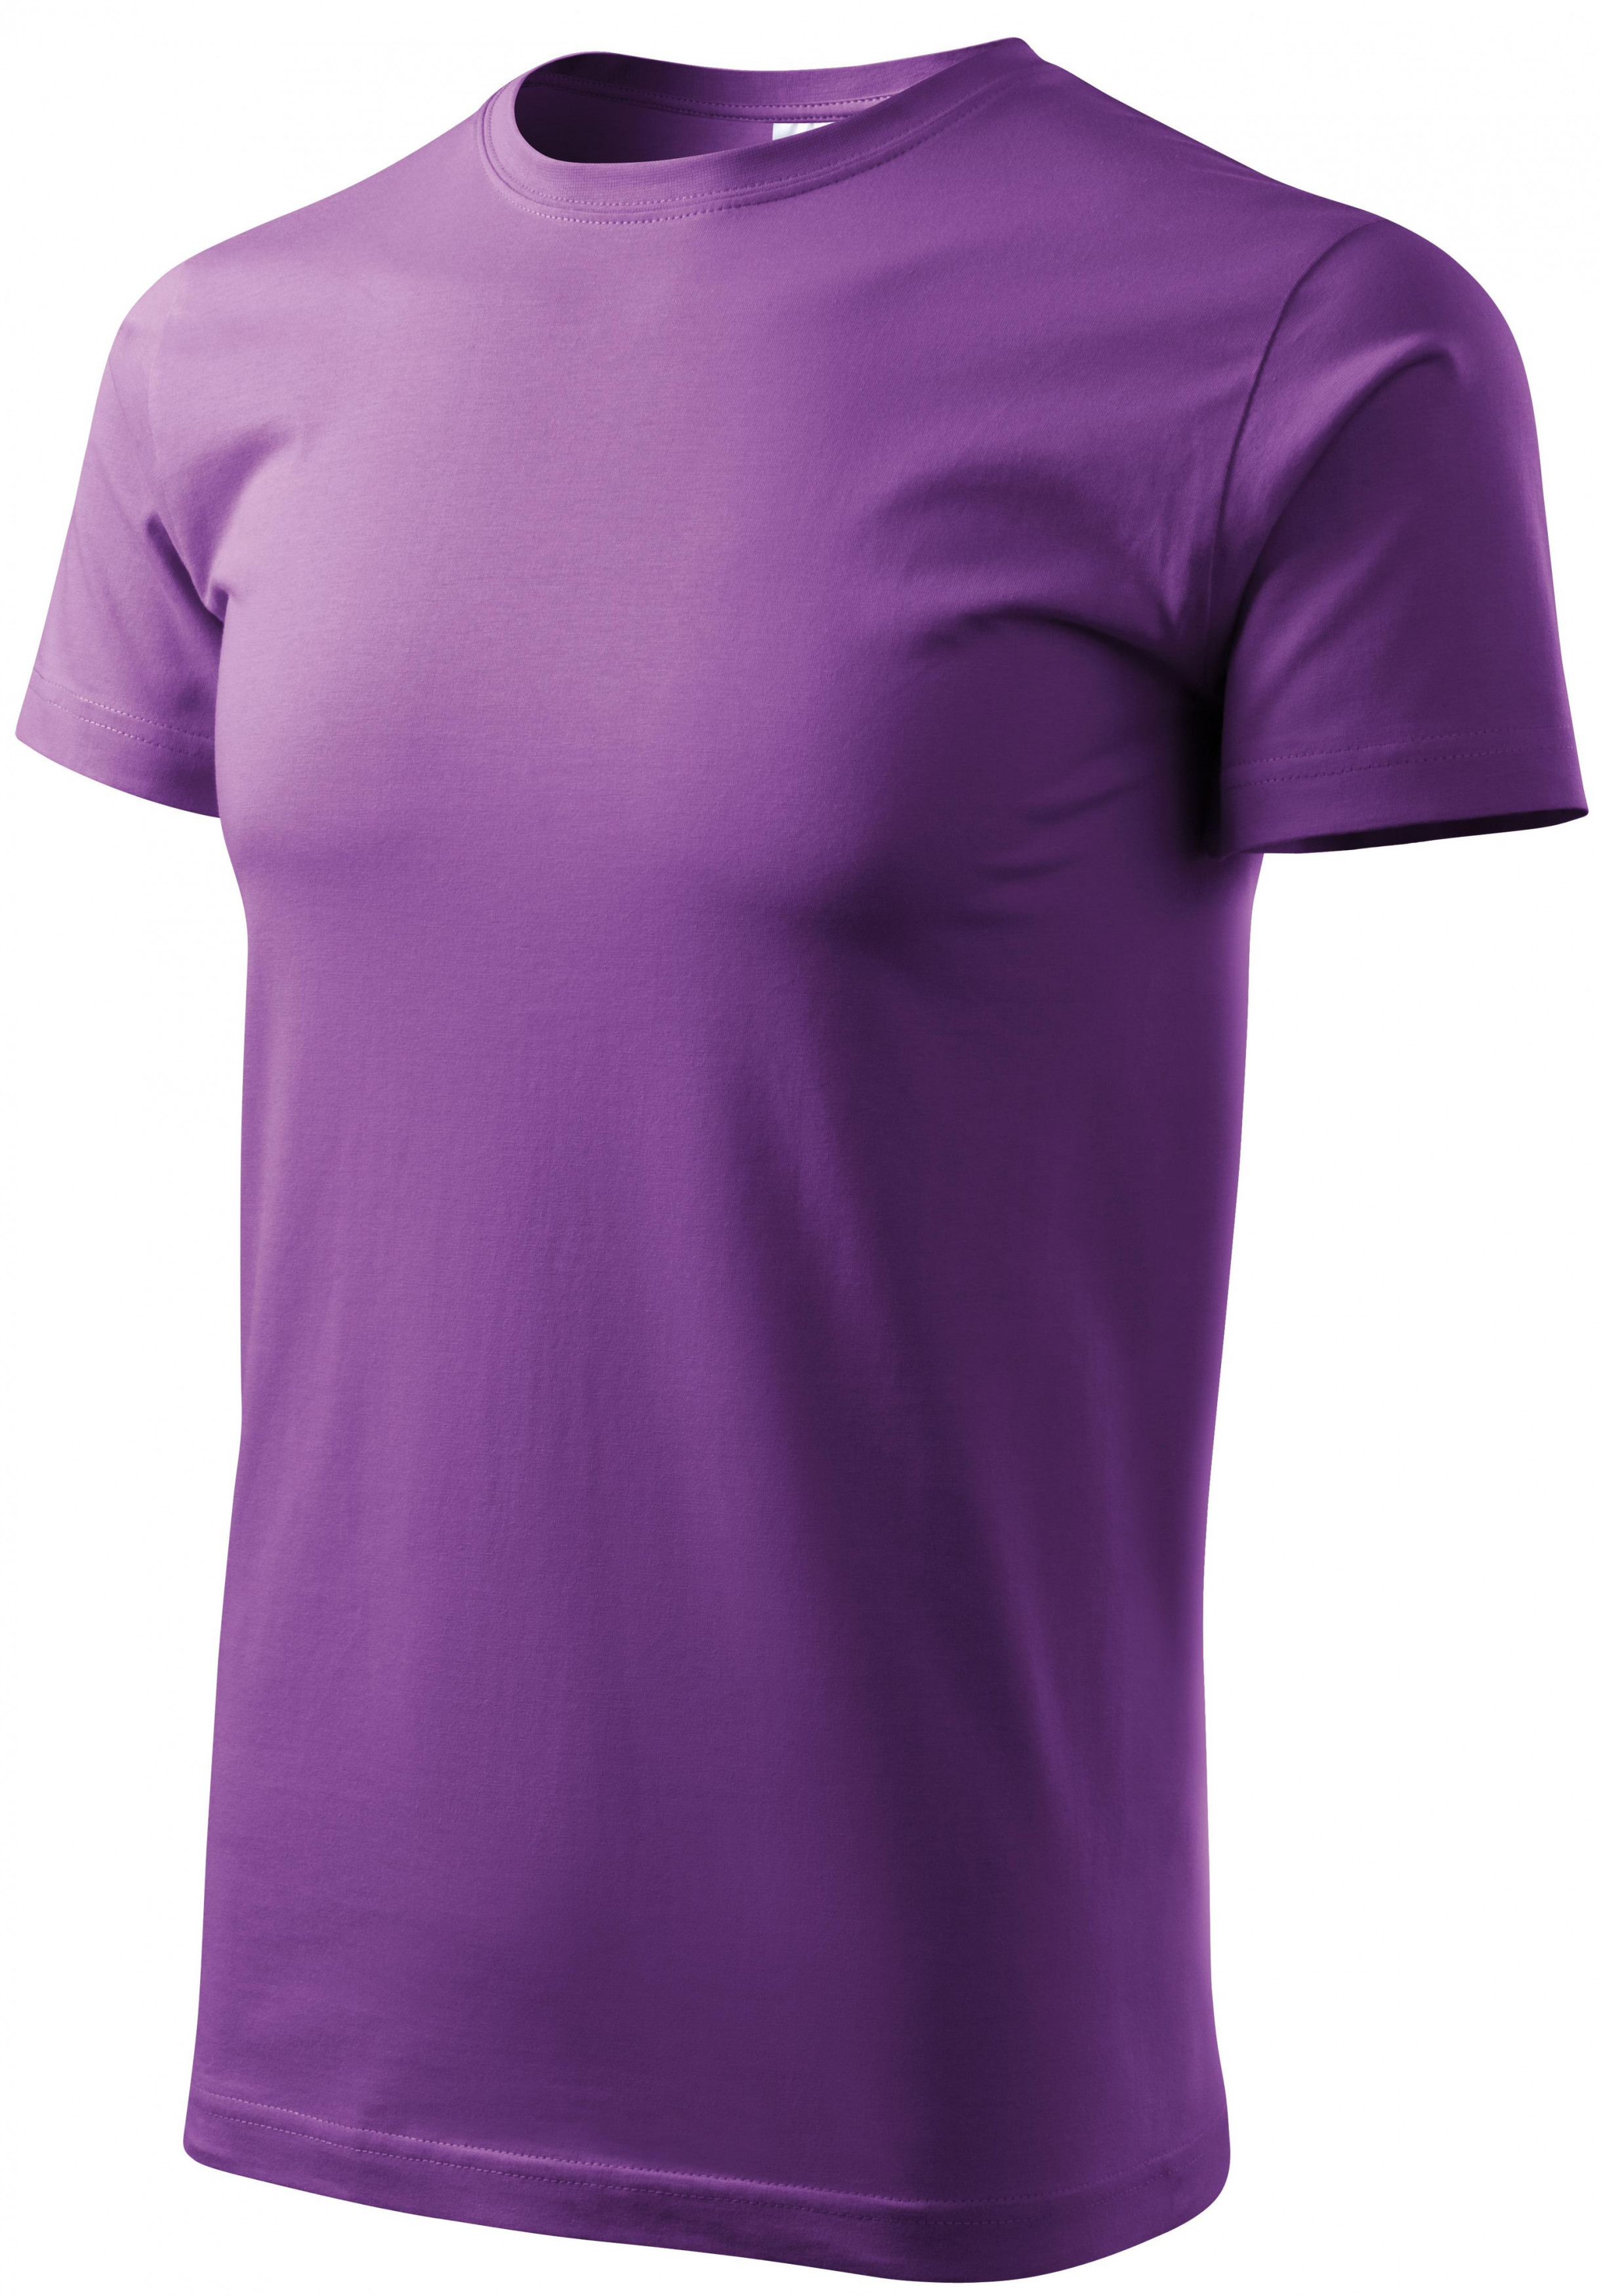 Pánske tričko jednoduché, fialová, S